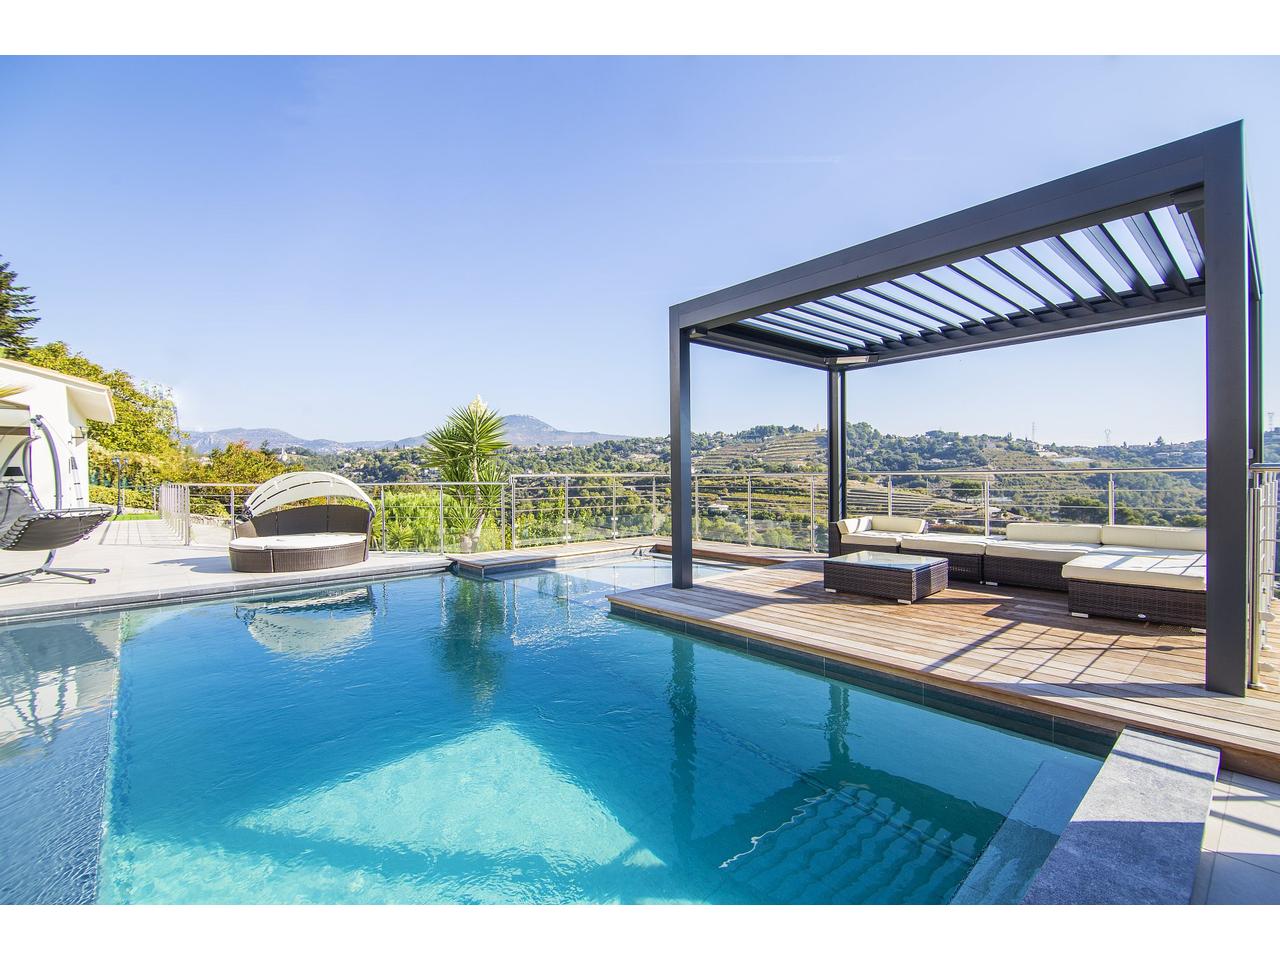 Nice Bellet – Magnifique villa au calme avec piscine à débordement et vue dégagée